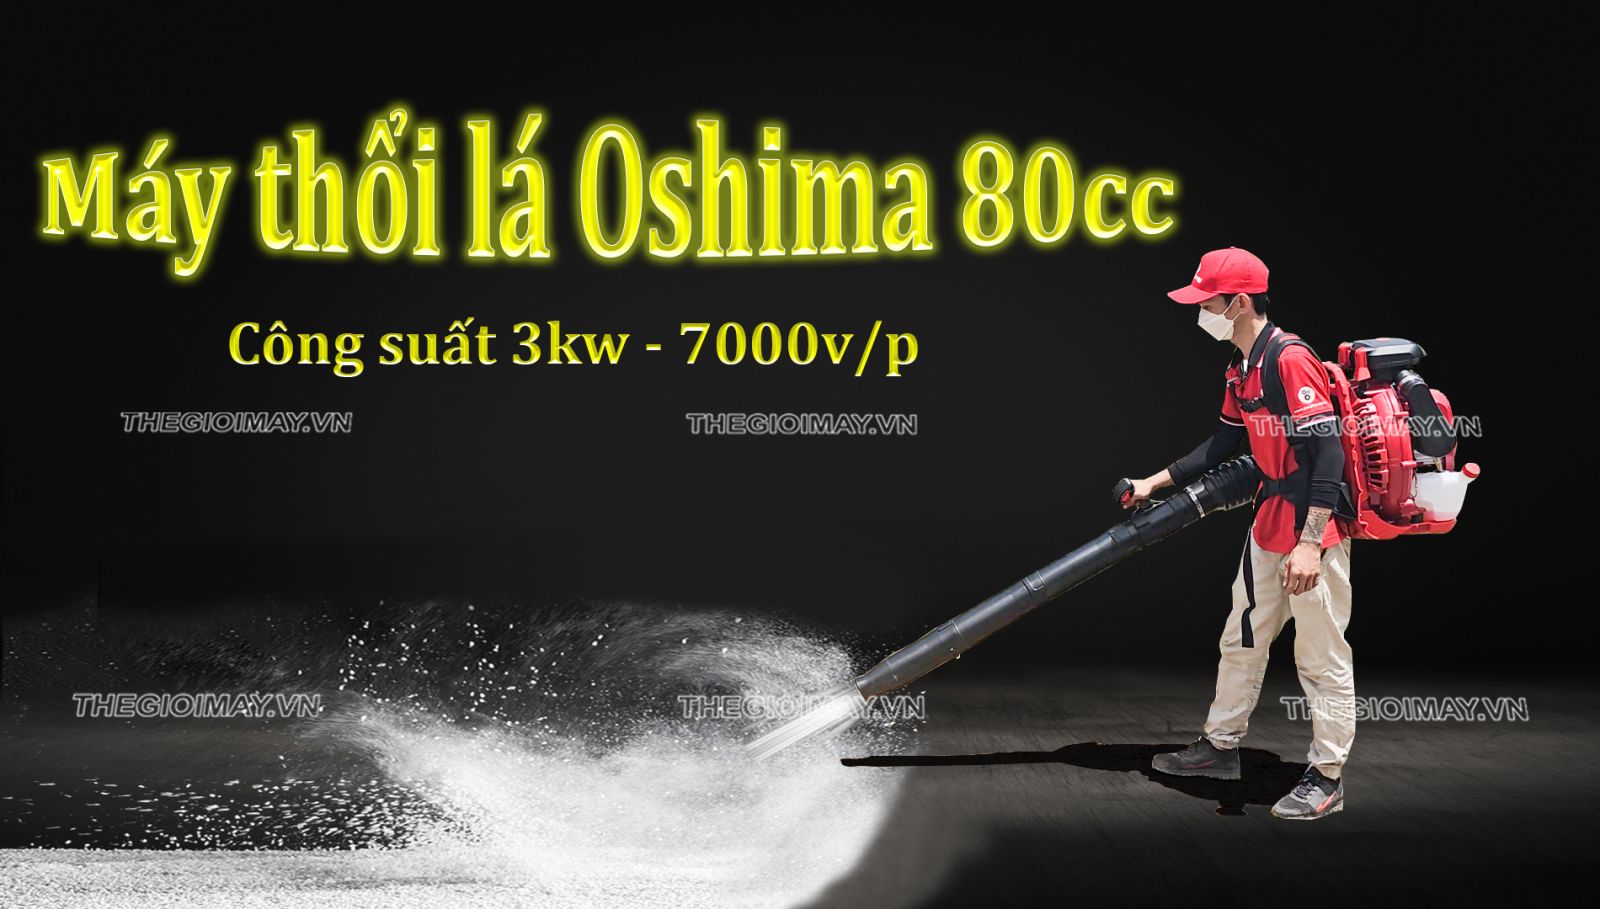 Máy thổi lá Oshima 80cc đỏ